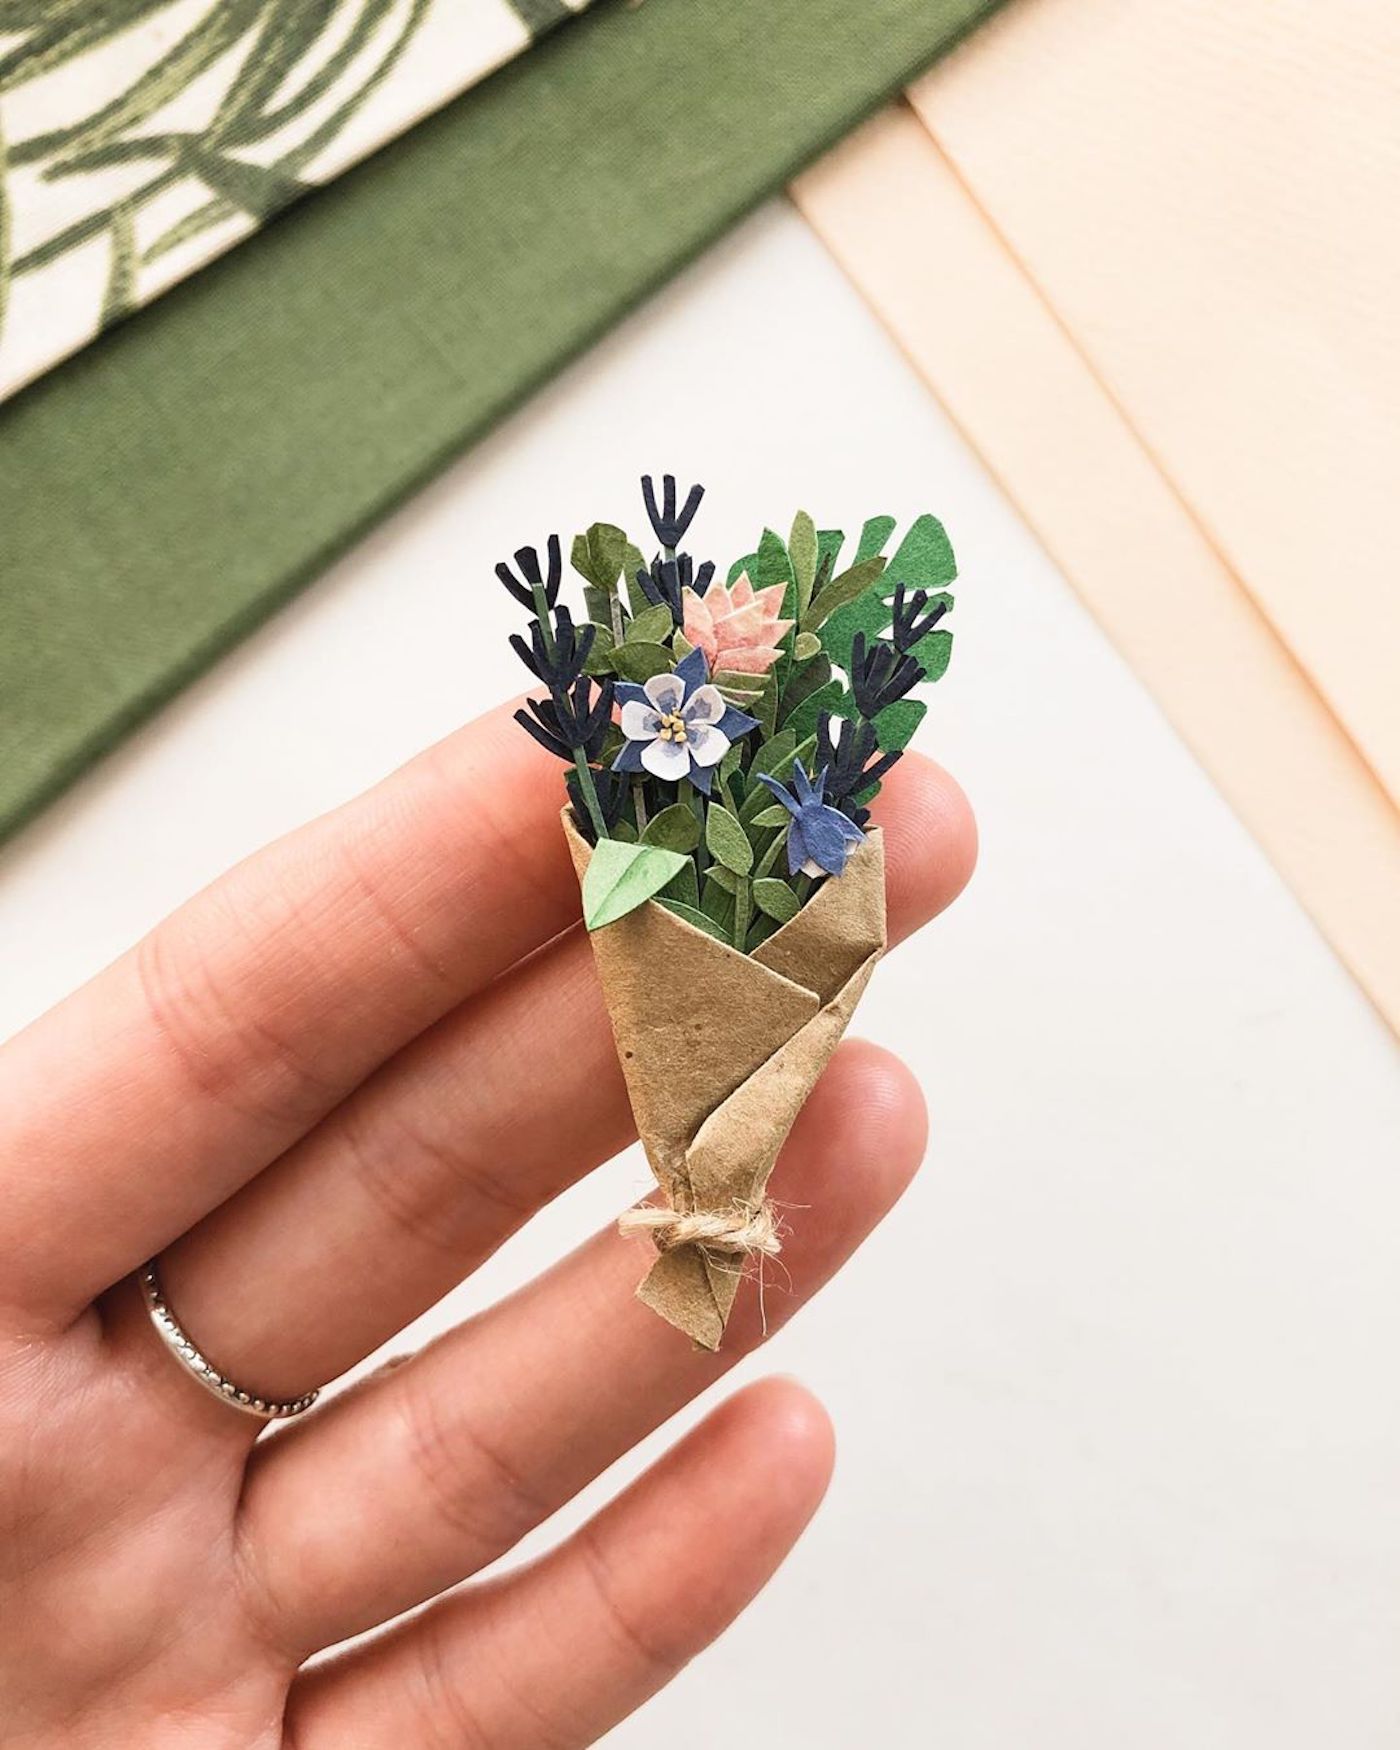 L'artiste Tania Lissova crée des bouquets de fleurs miniatures en papier